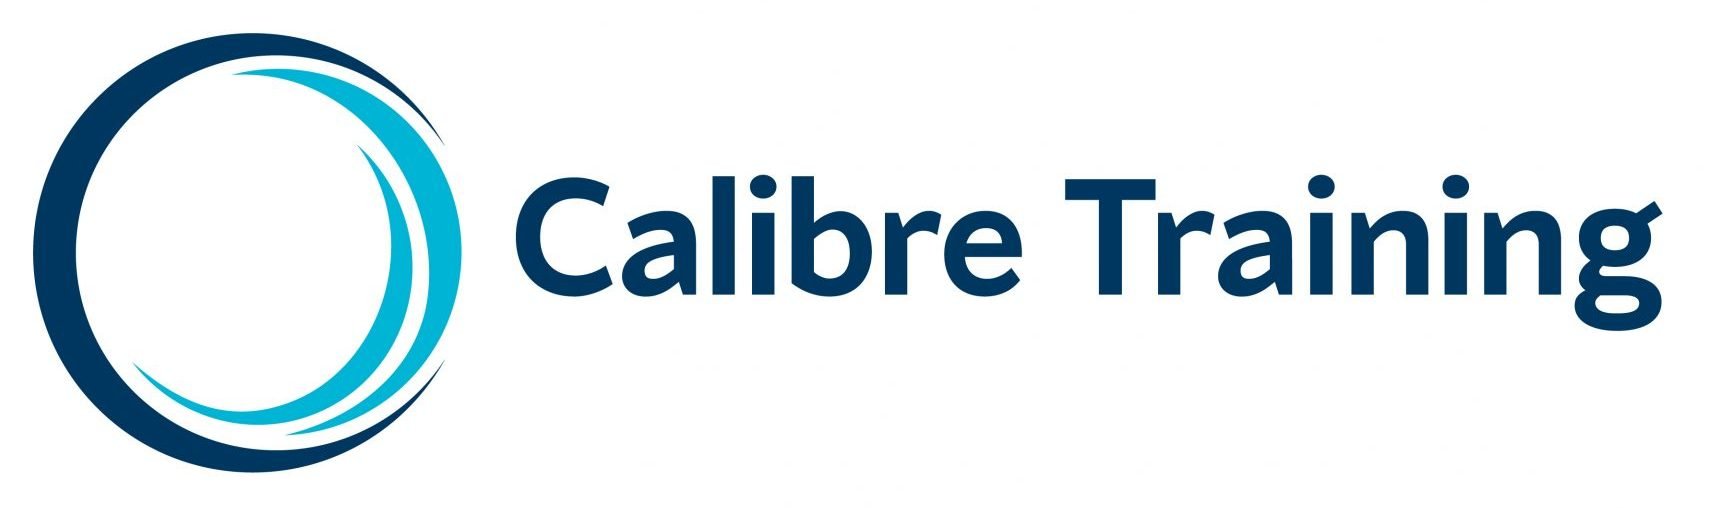 Calibre Training logo